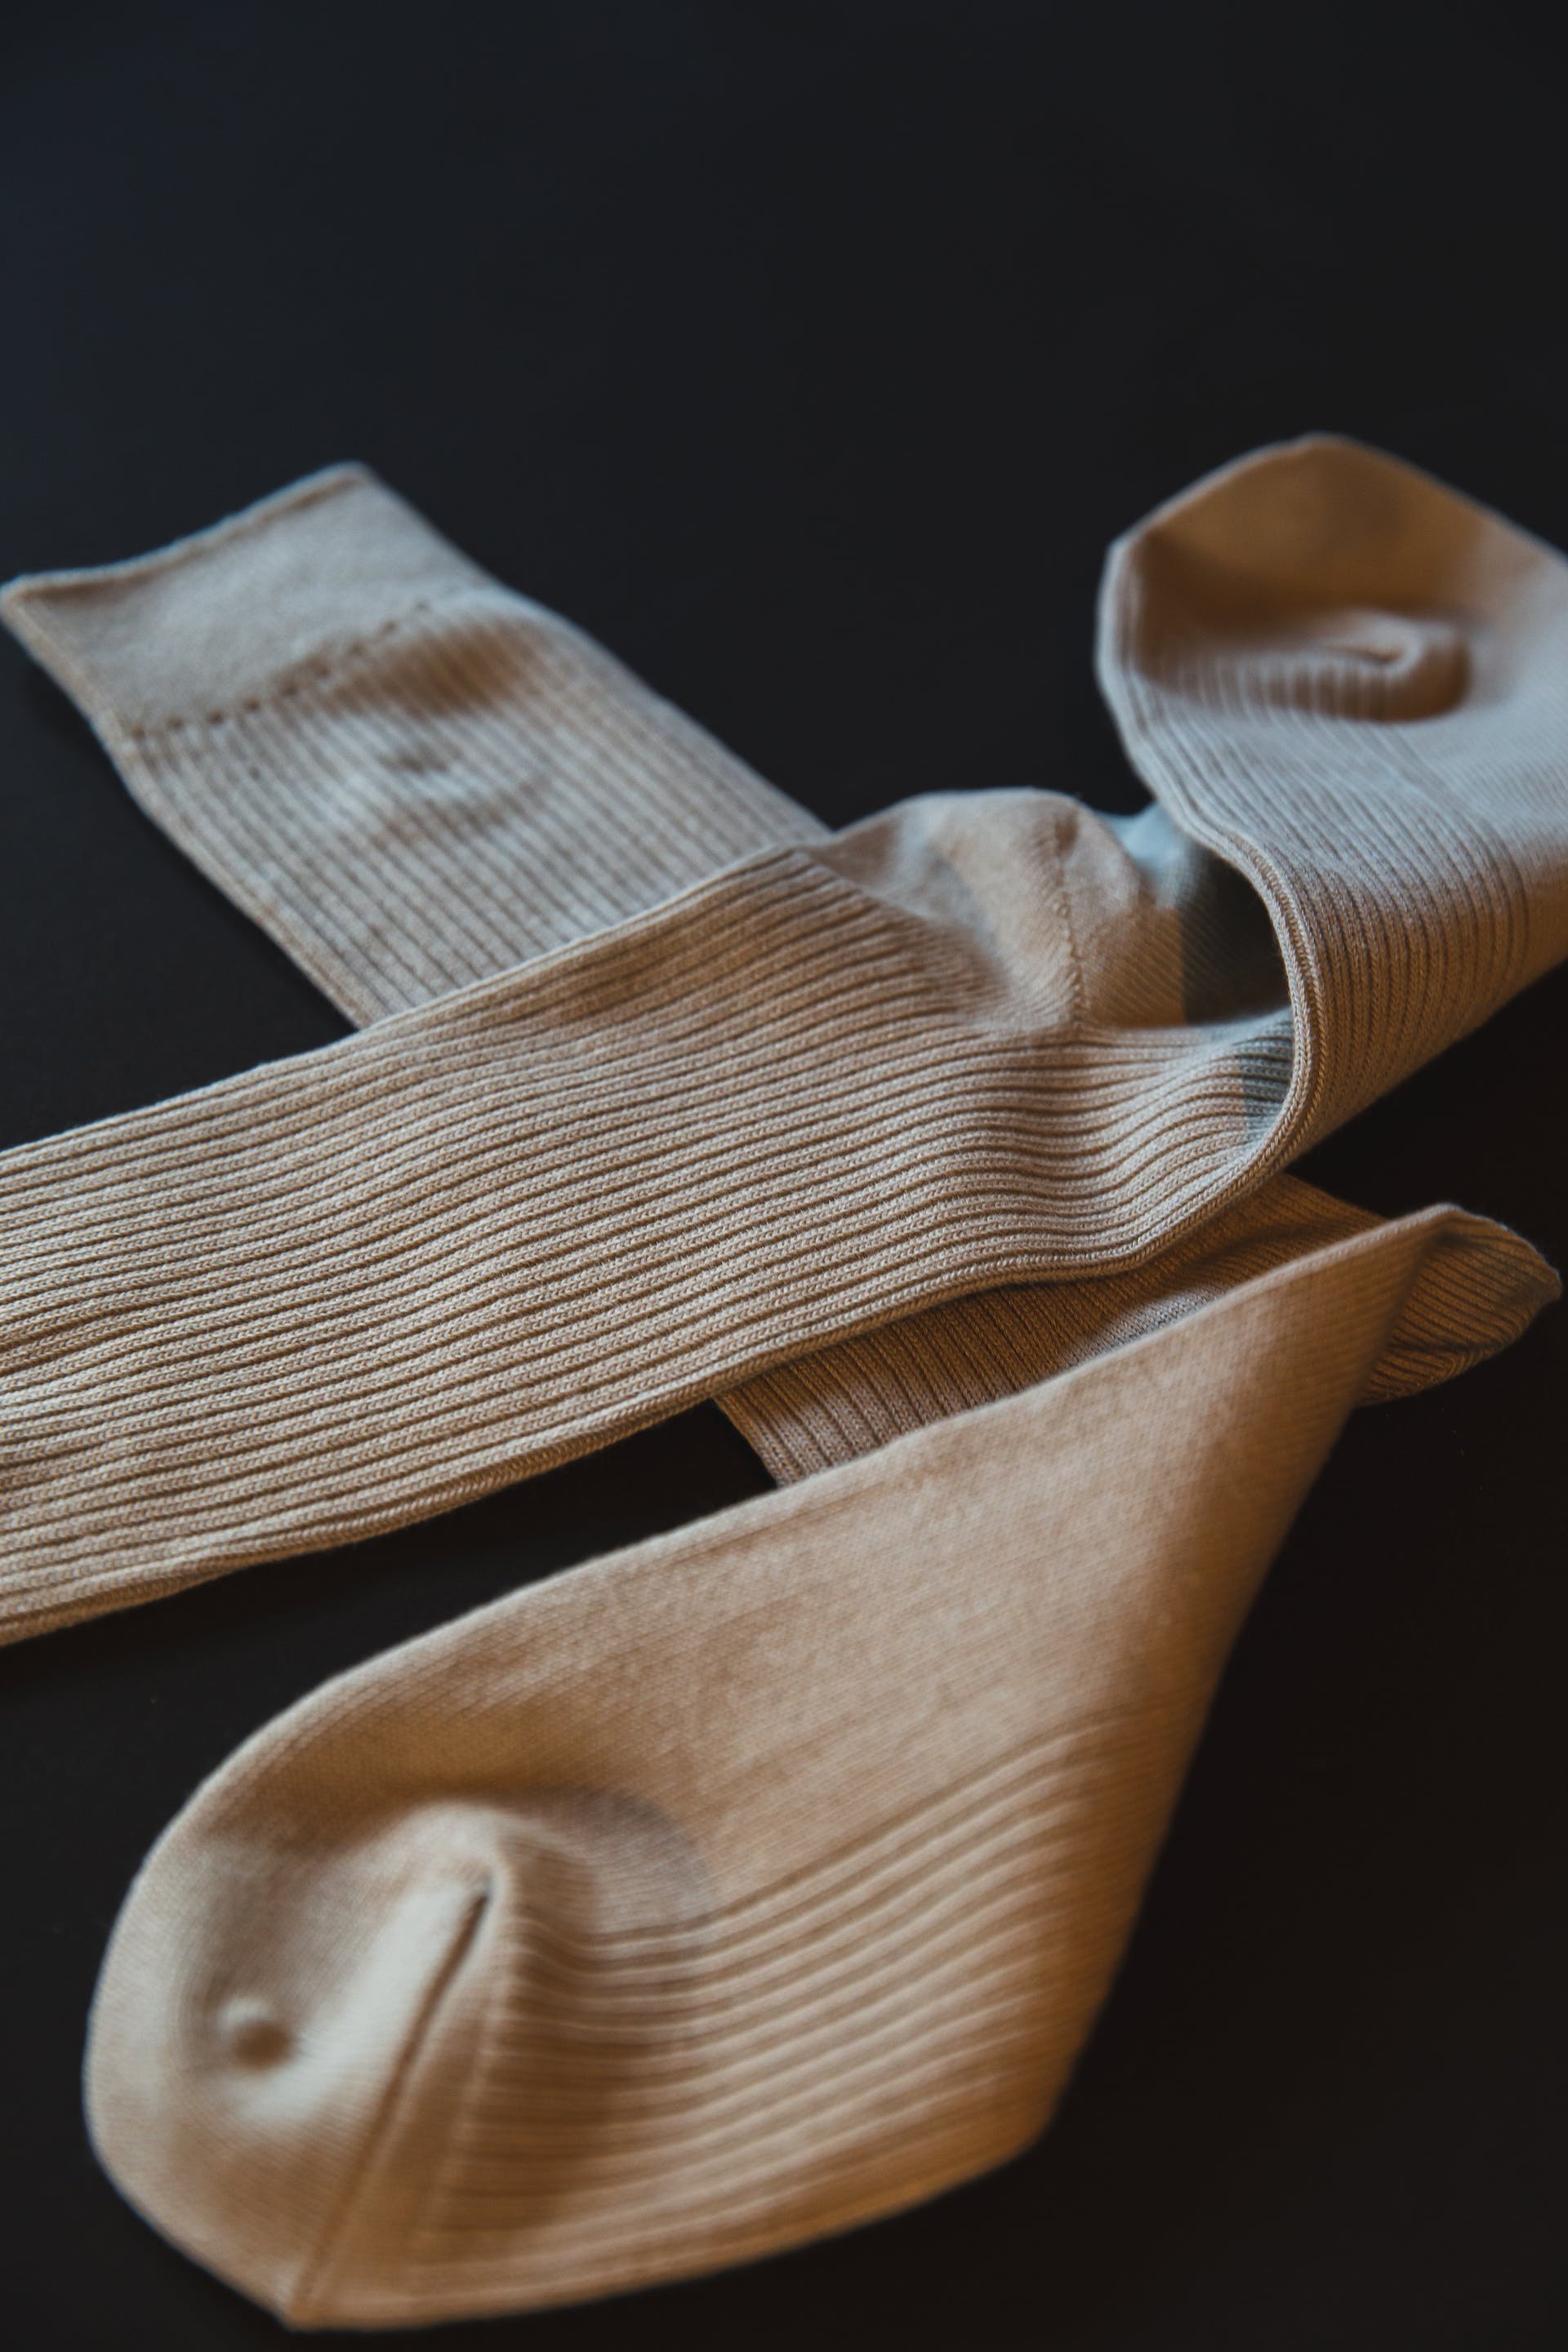 Ein Paar Socken | Quelle: Pexels